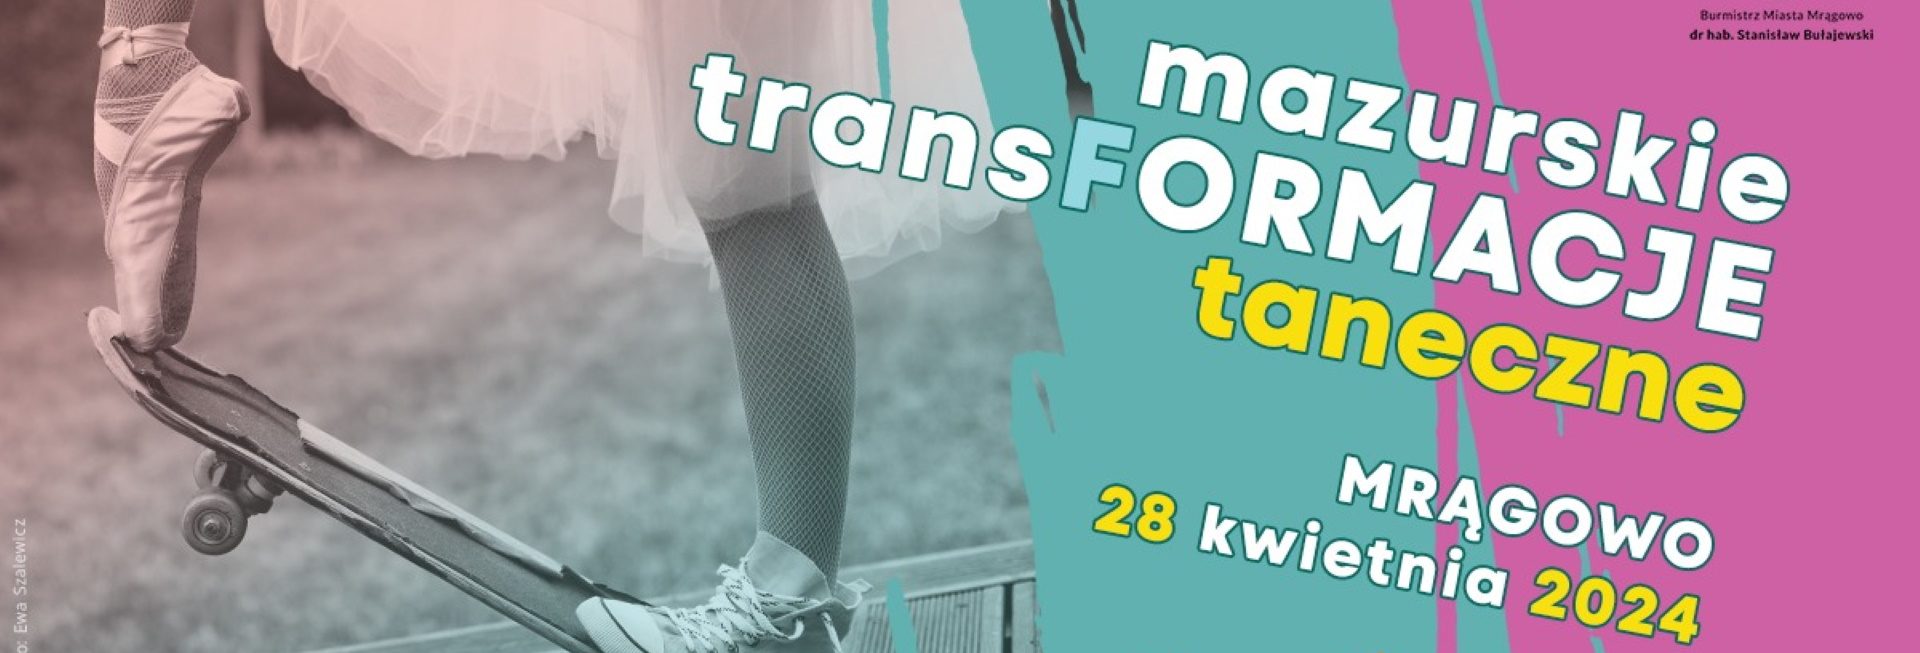 Plakat zapraszający w niedzielę 28 kwietnia 2024 r. do Mrągowa na 6. edycję Mazurskich TransFormacji Tanecznych Mrągowo 2024.